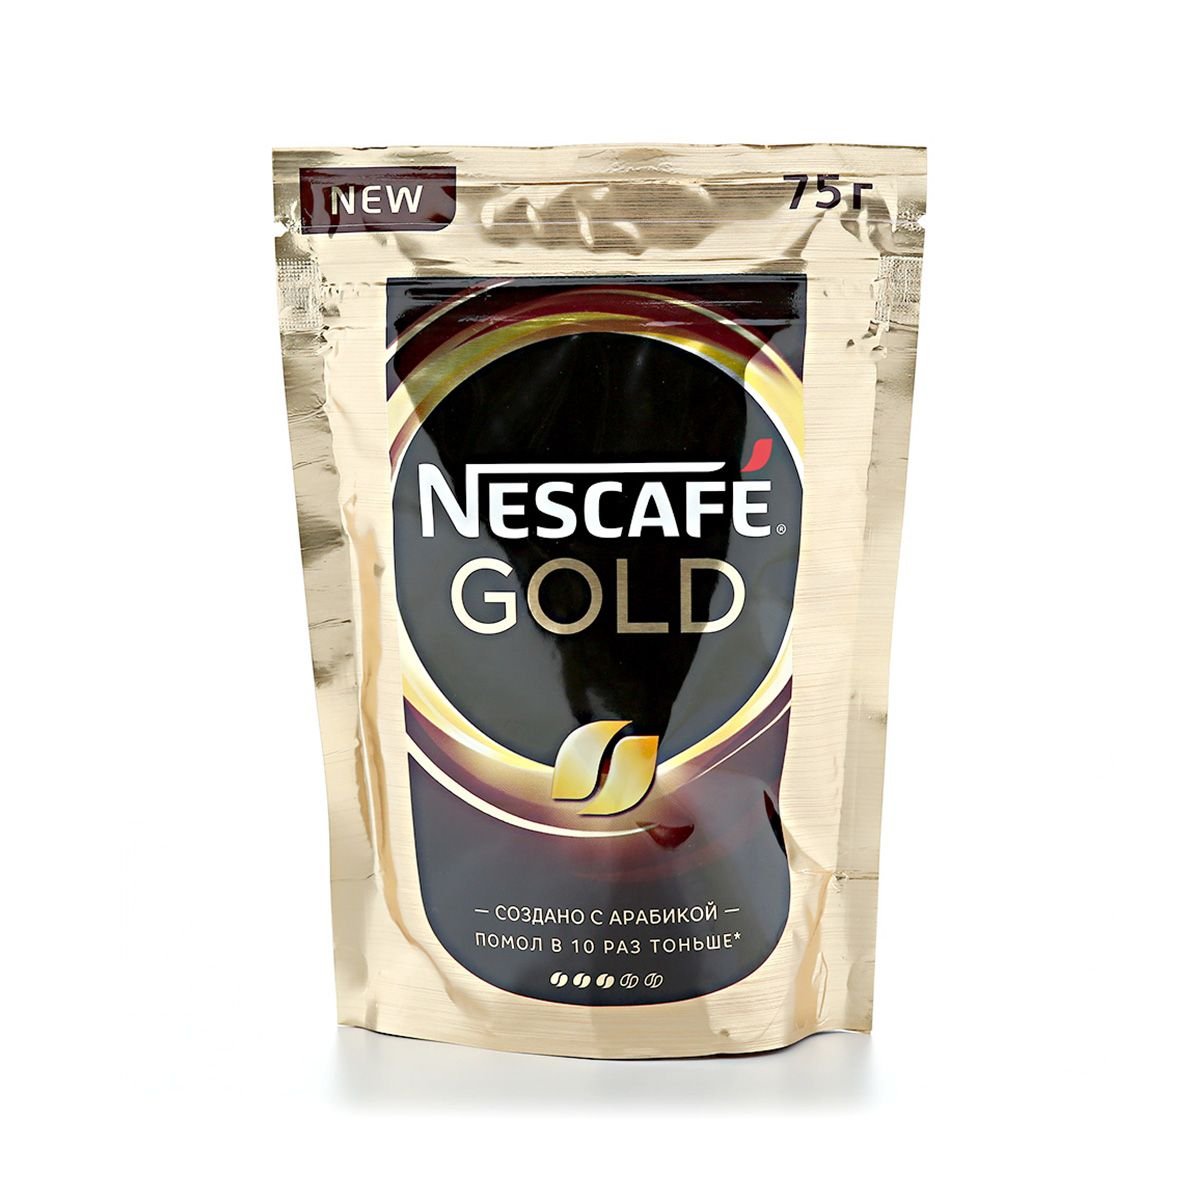 Nescafe gold 320. Кофе "Нескафе" Голд пакет 75г. Nescafe Gold 75 гр. Кофе Нескафе Голд 75г м/у. Кофе растворимый Nescafe Gold пакет, 75г.